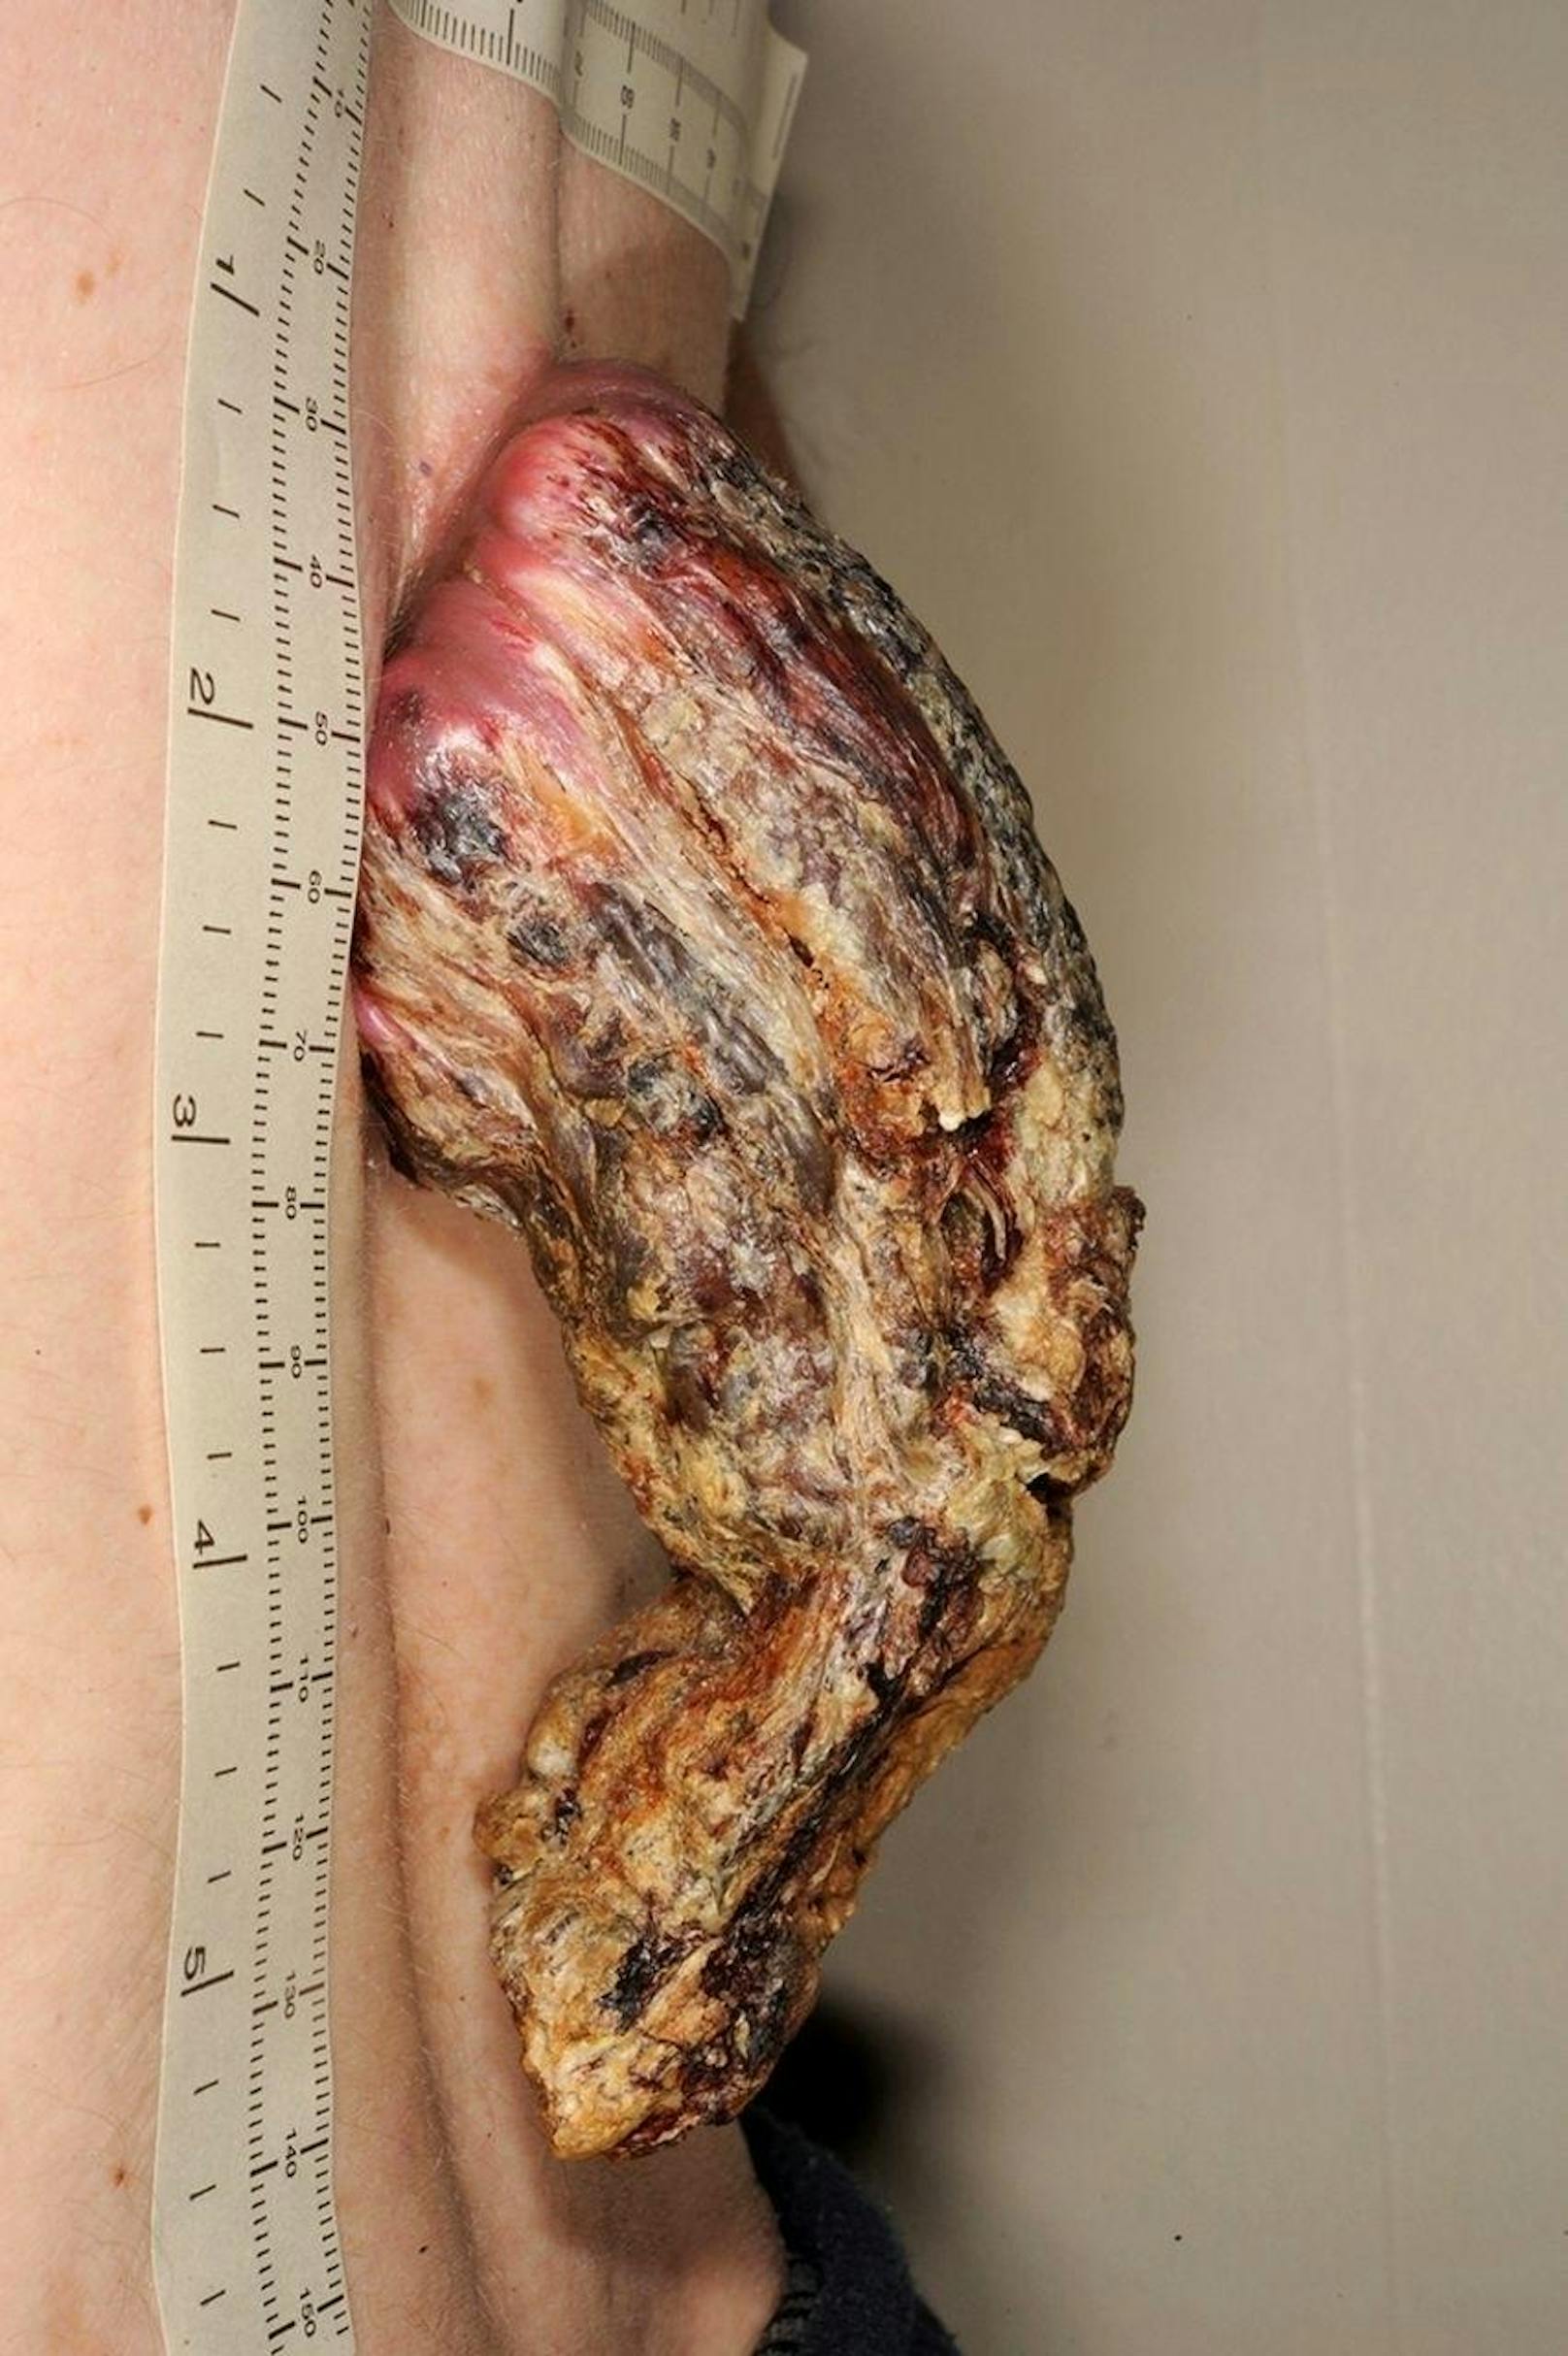 Ärzte in England mussten einem Mann einen bösartigen Hauttumor entfernen, der sich über Jahre zu einer Art Drachenhorn entwickelt hatte.